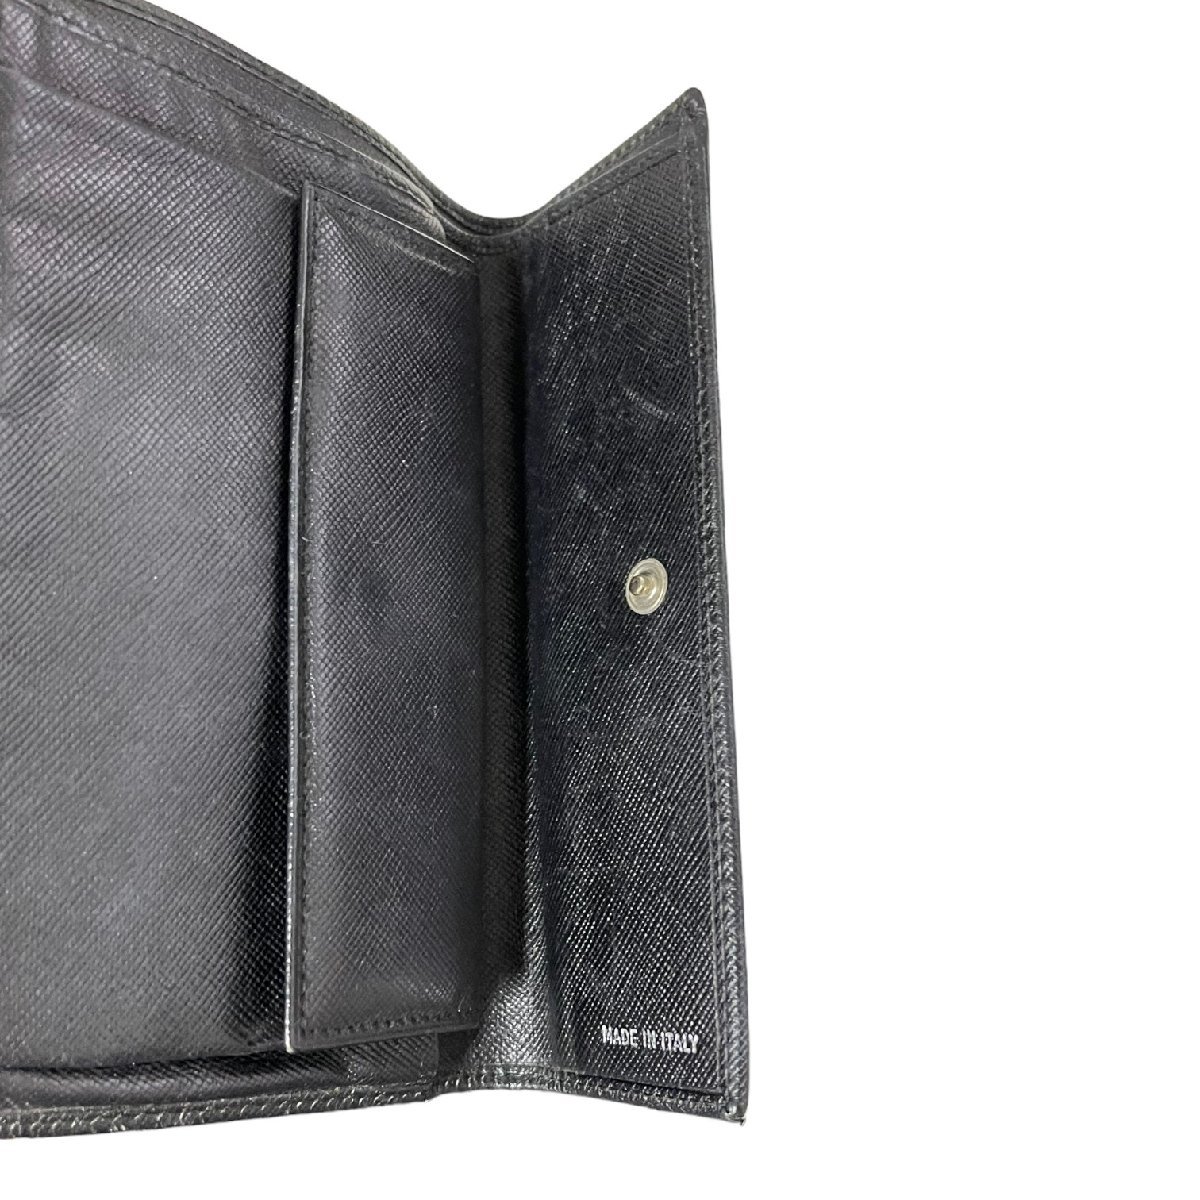 【中古品】PRADA プラダ 二つ折り財布 M510 ブラック ナイロンレザー メンズ財布 箱無 本体のみ L54732RK_画像5